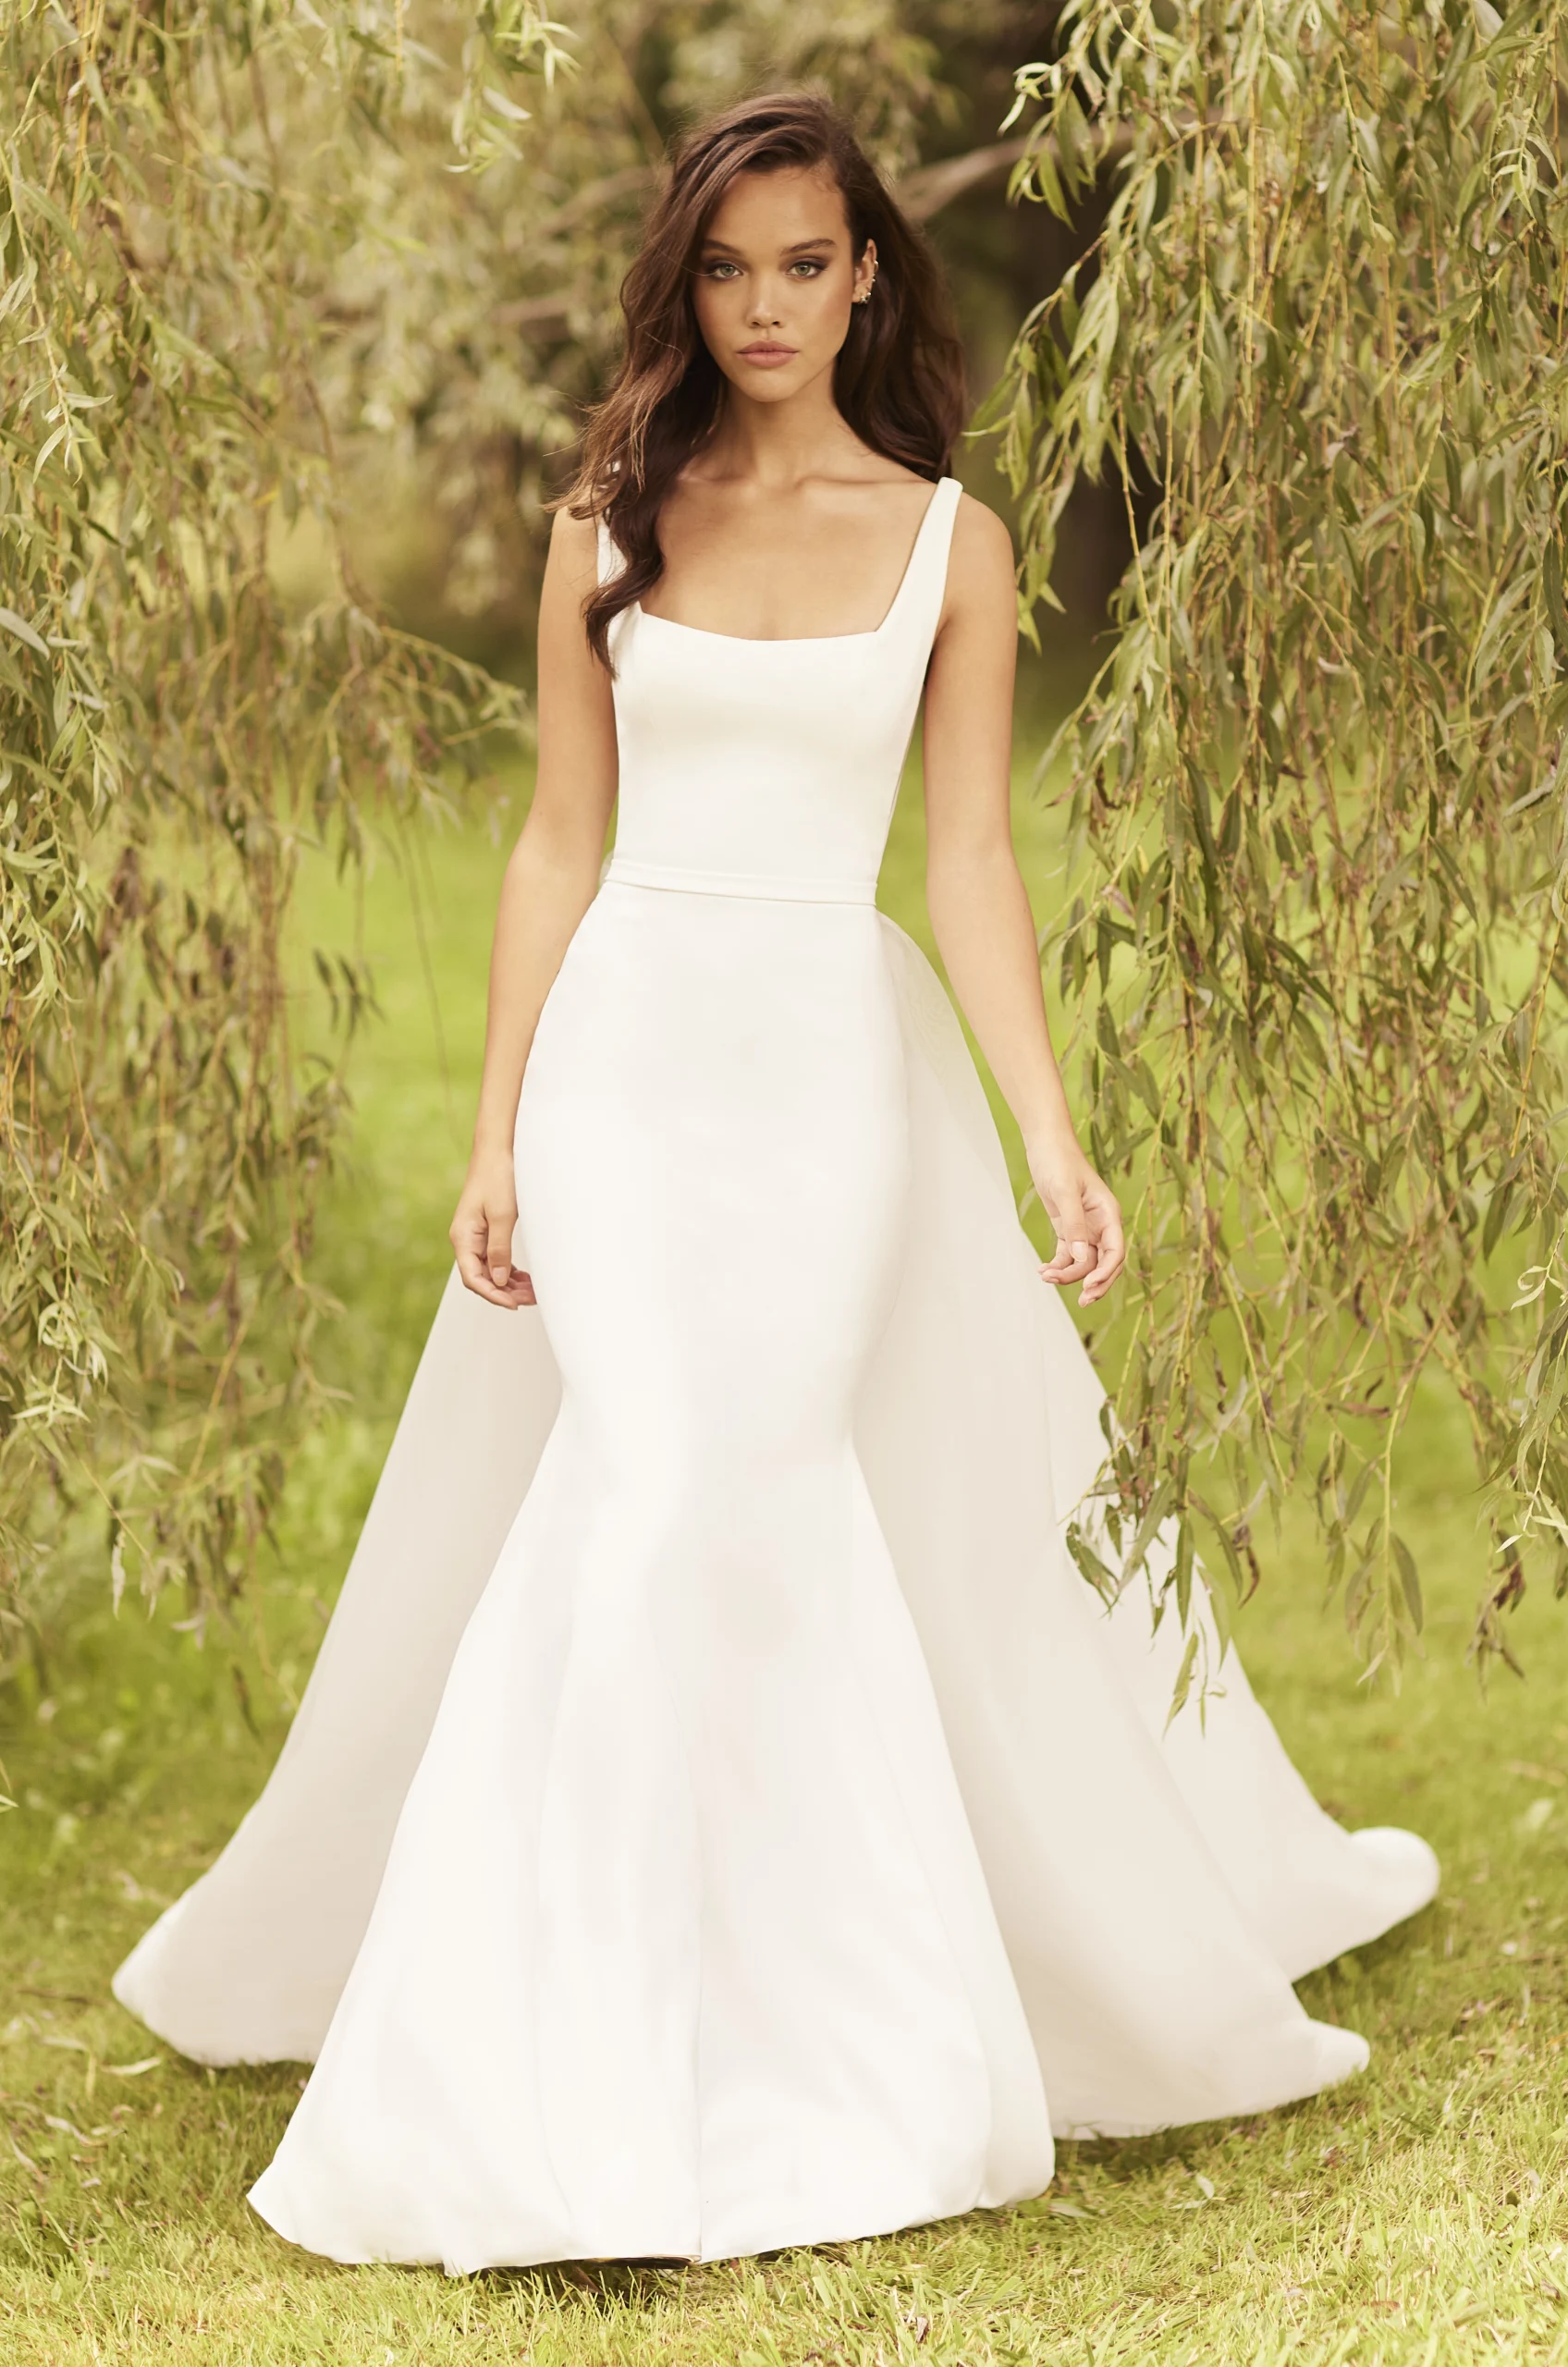 Midsize Wedding Dress - Shop on Pinterest